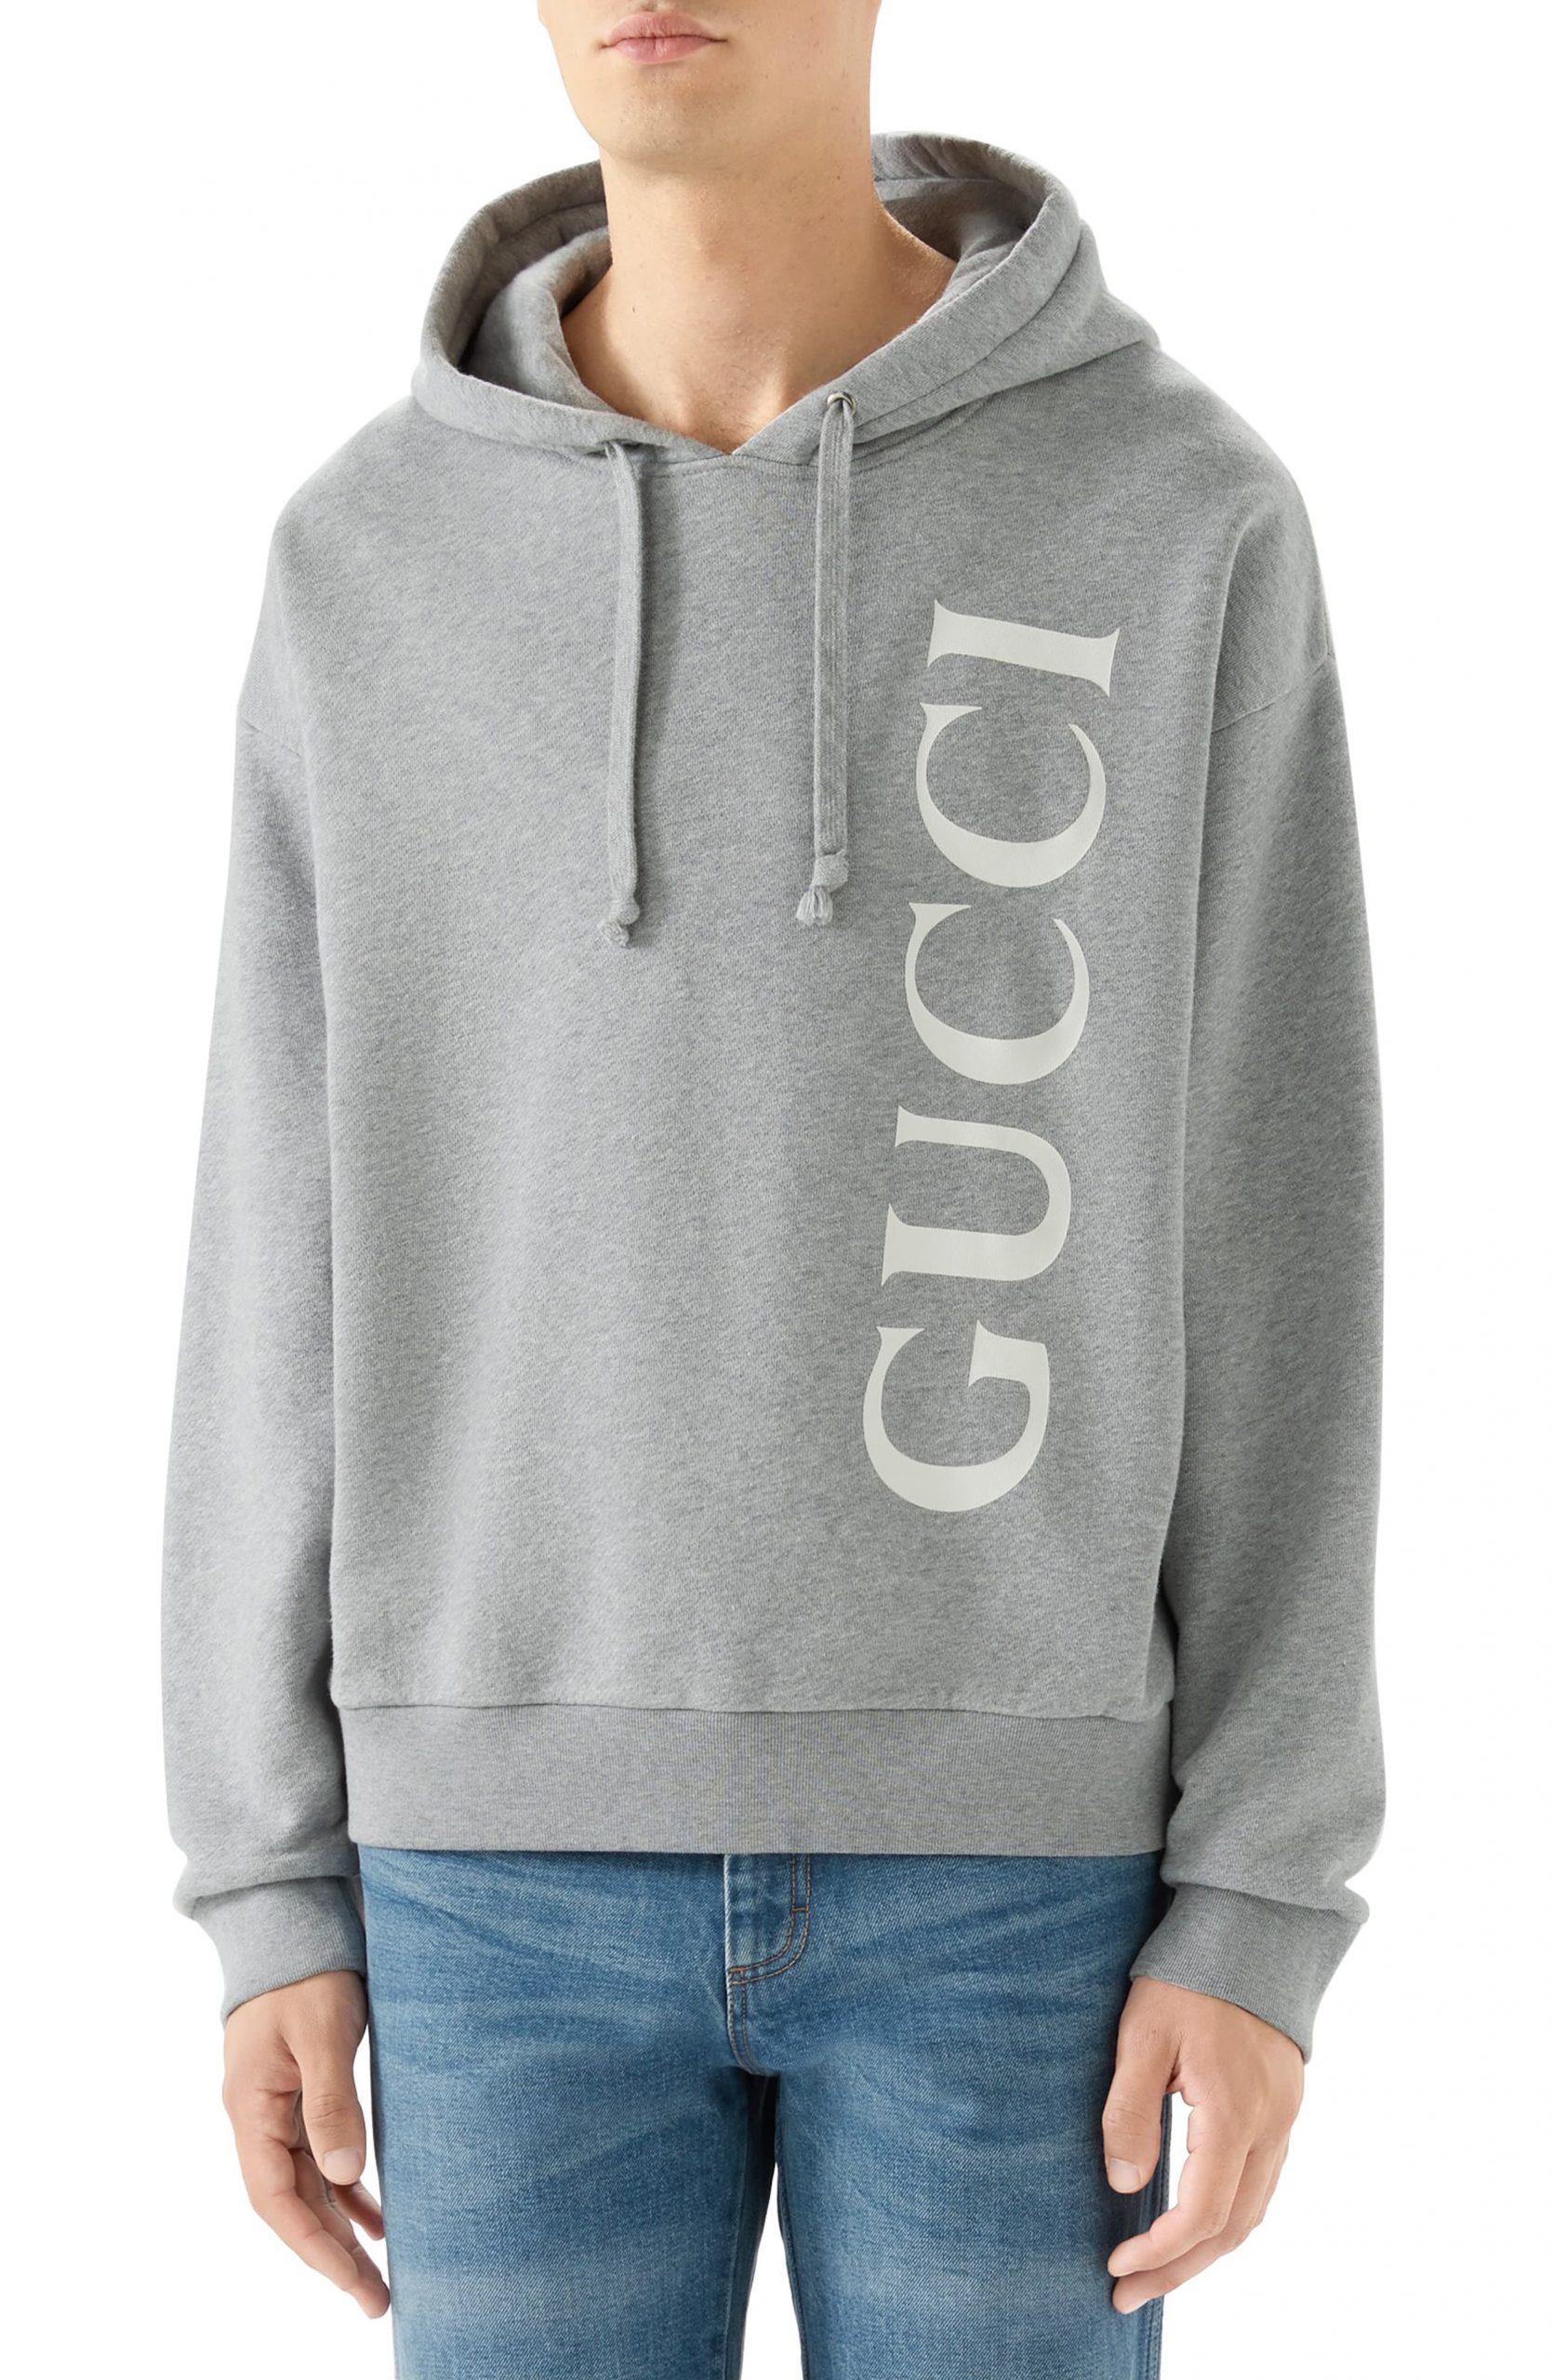 gucci grey hoodie